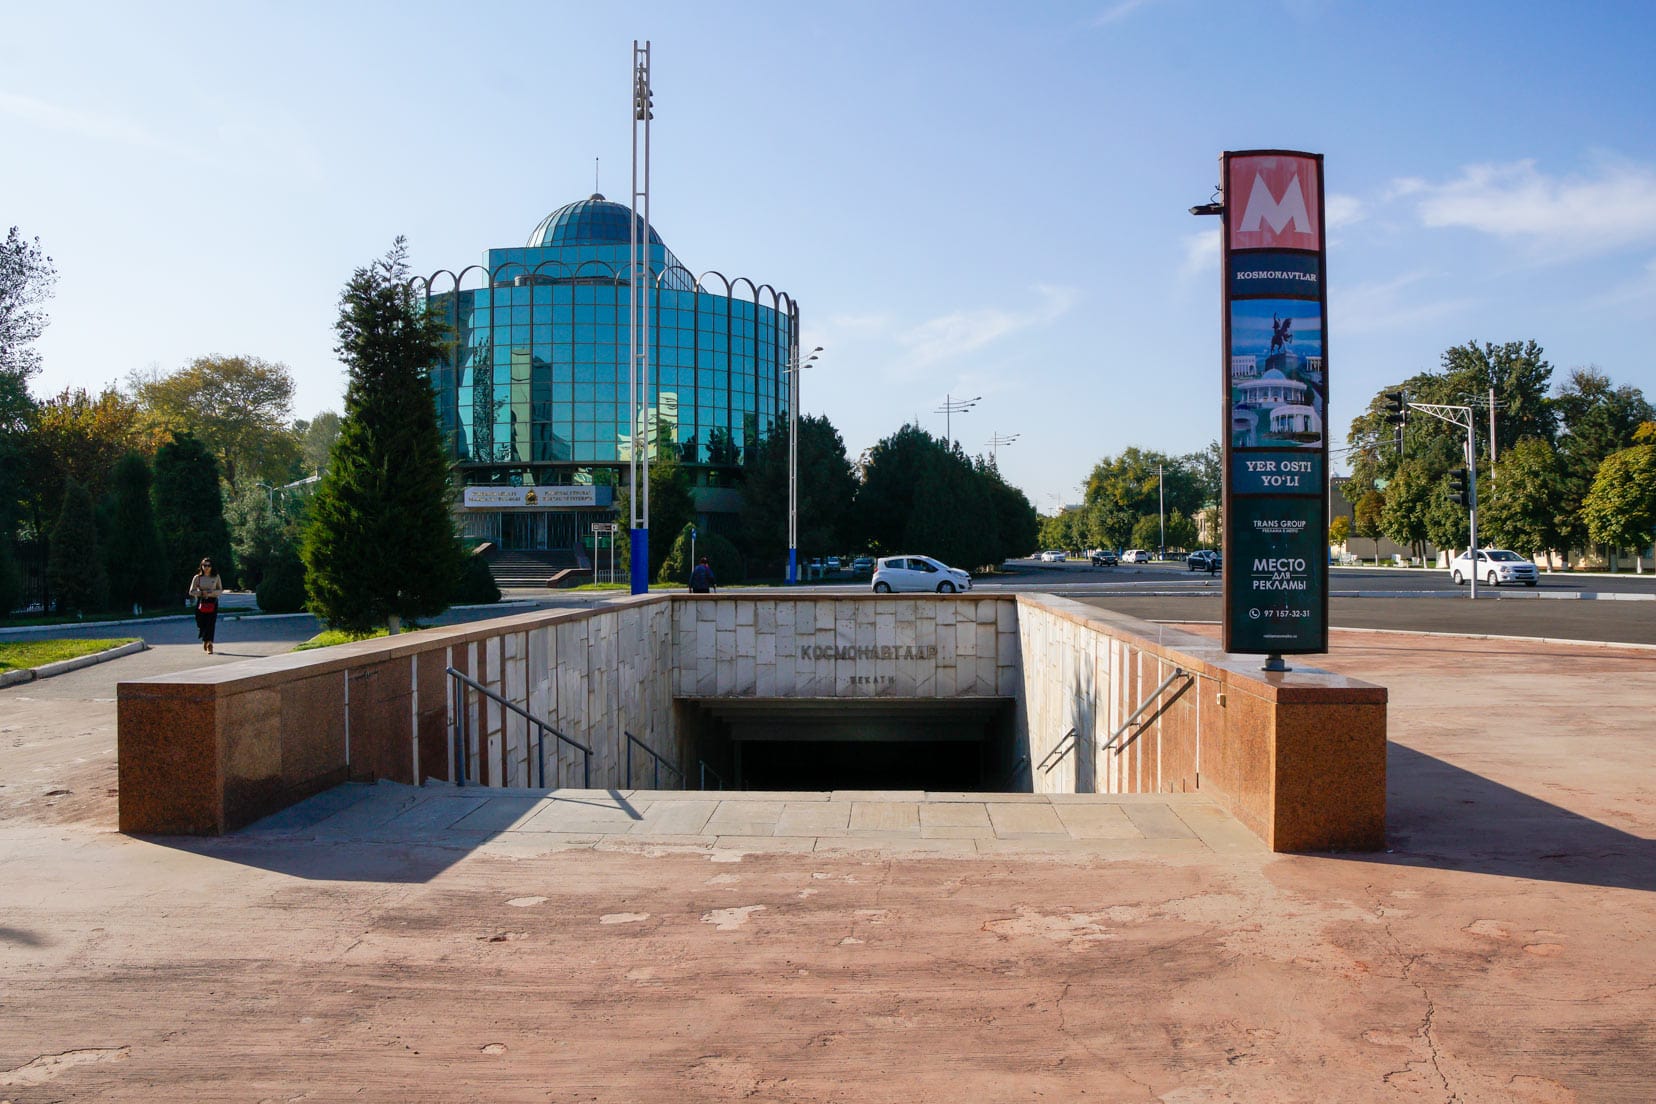 Tashkent-metro-entrance-also-the-bunker-entry-point,is Tashkent worth visiting